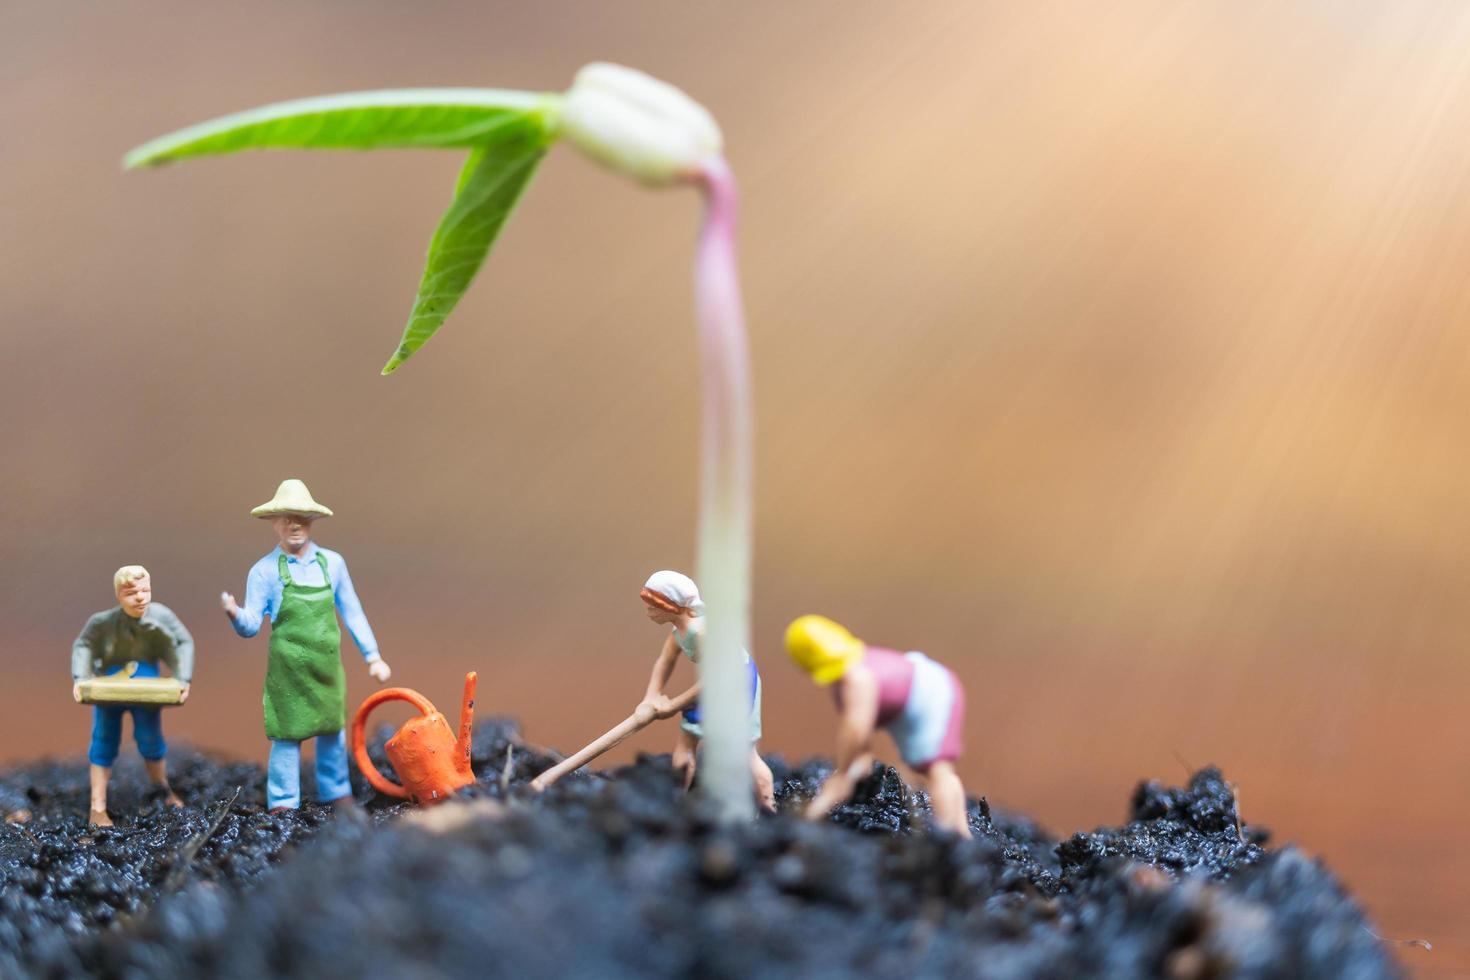 jardineiros em miniatura cuidando do cultivo de brotos em um campo, conceito de ambiente foto